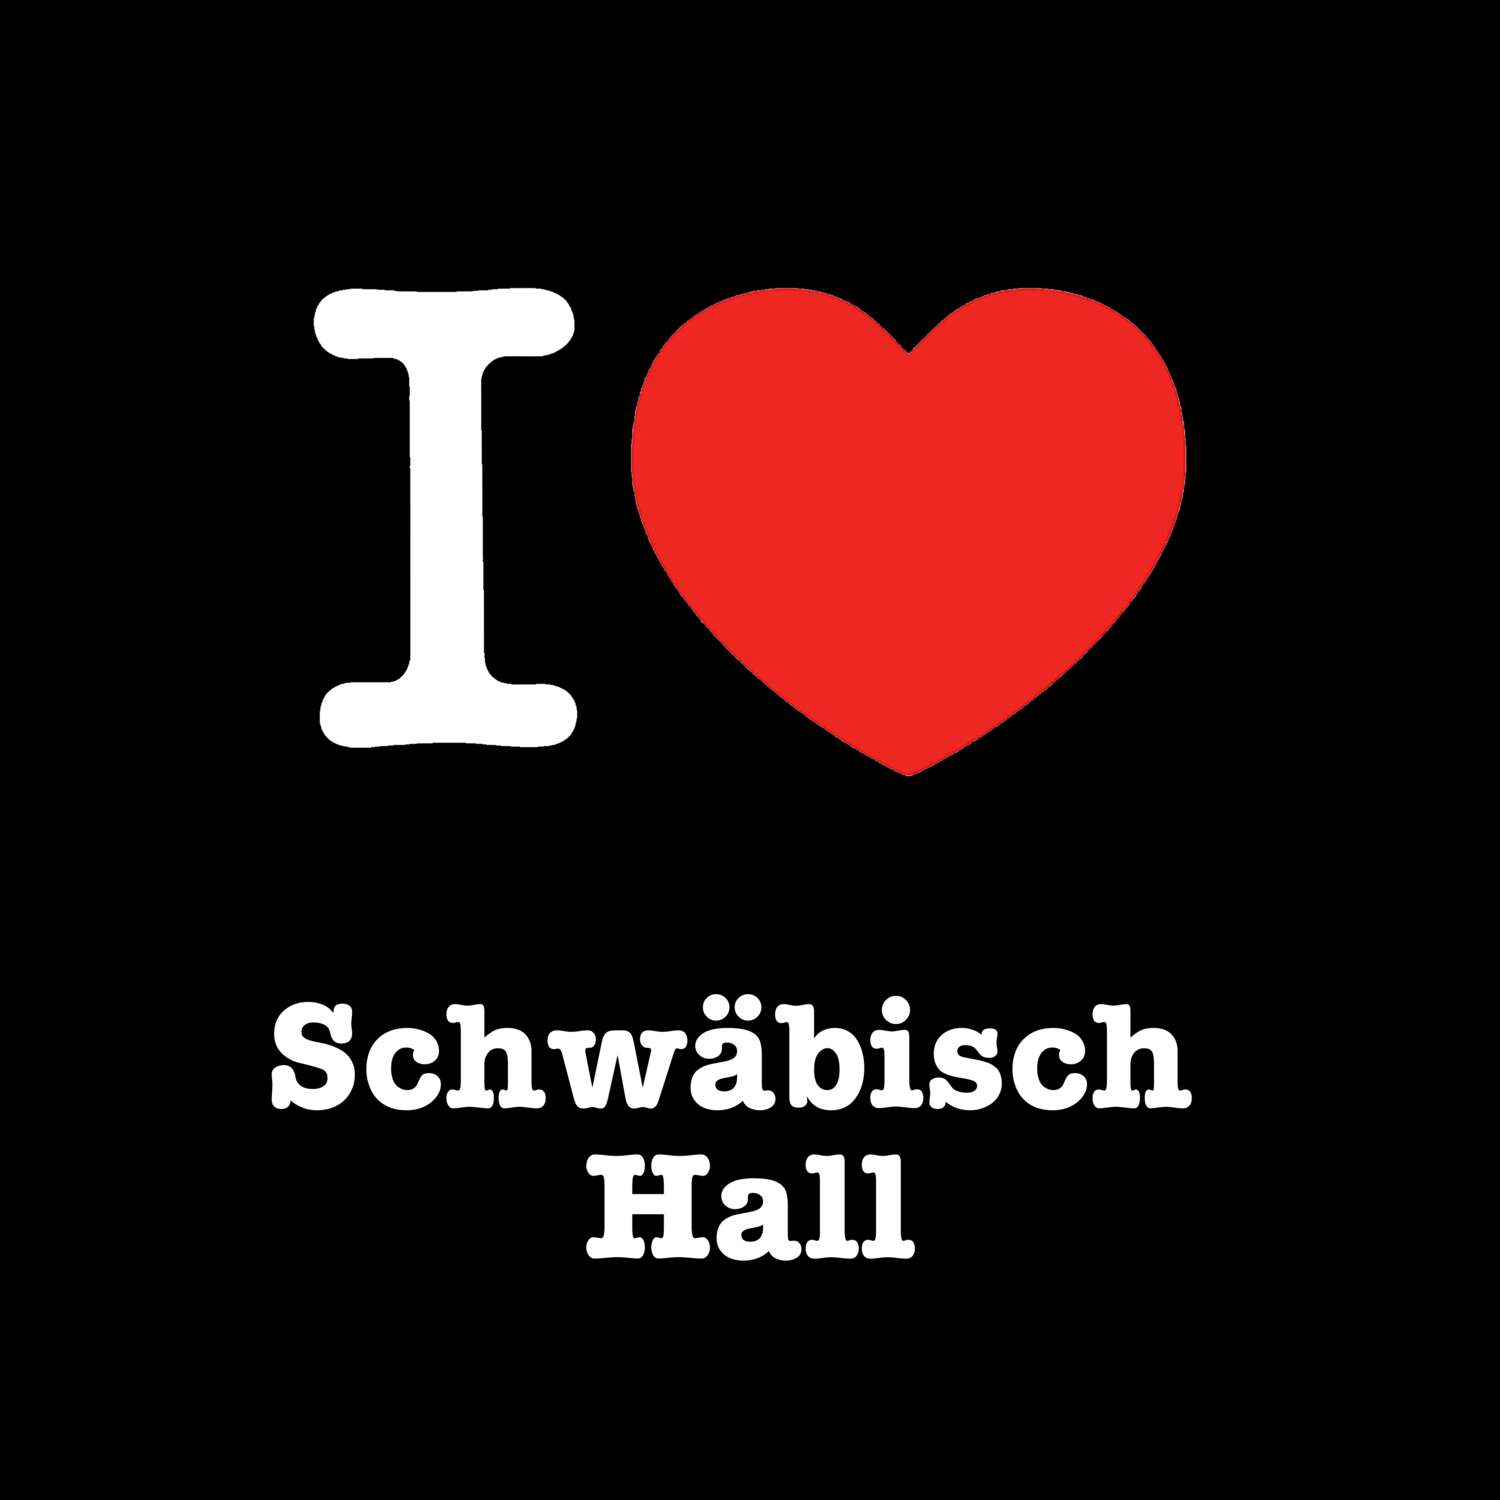 Schwäbisch Hall T-Shirt »I love«